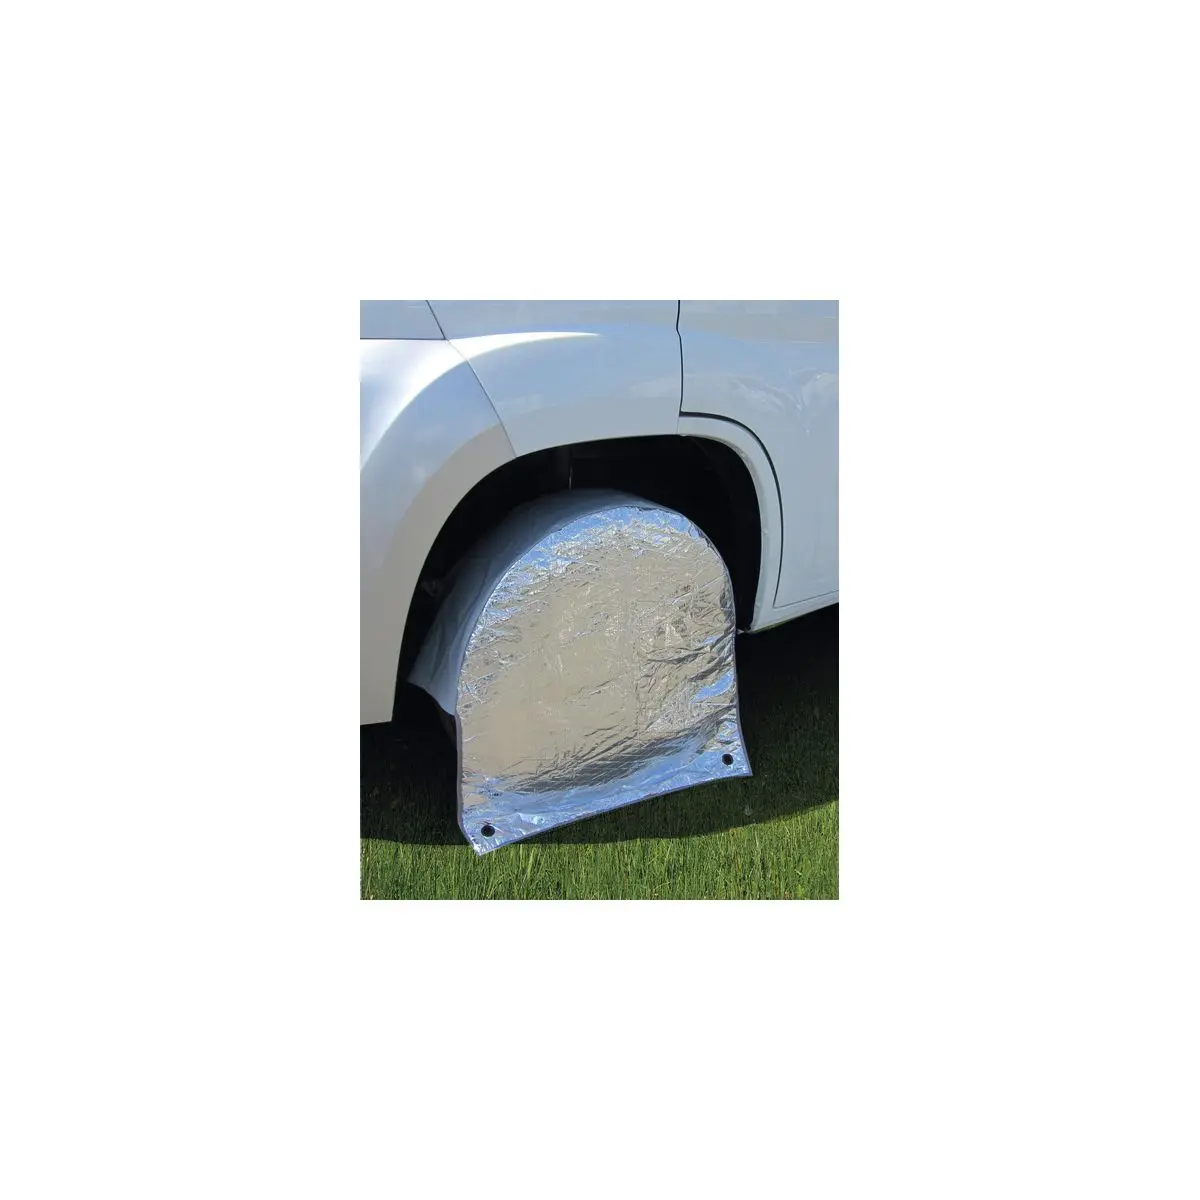 Ochranný kryt pneumatík Carbest 15-17 palcov - 1 kus